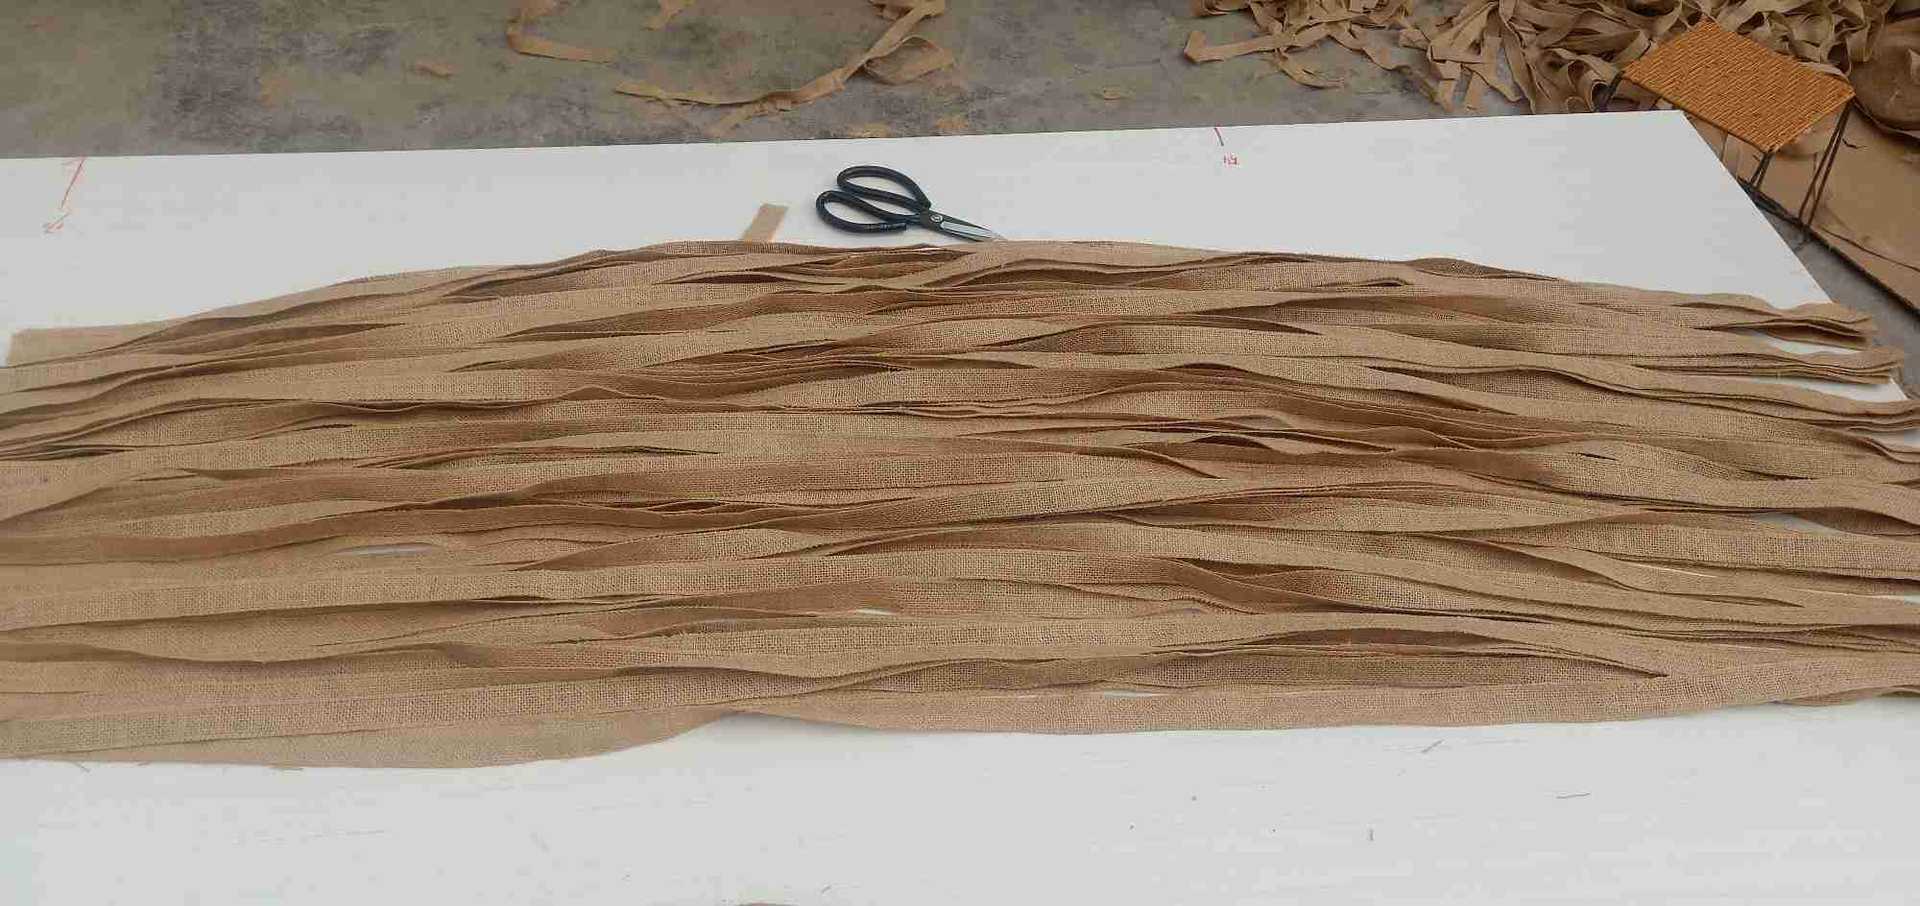 麻布條編織麻繩麻布繩2-160厘米加工定做永盛麻業麻袋麻布麻繩